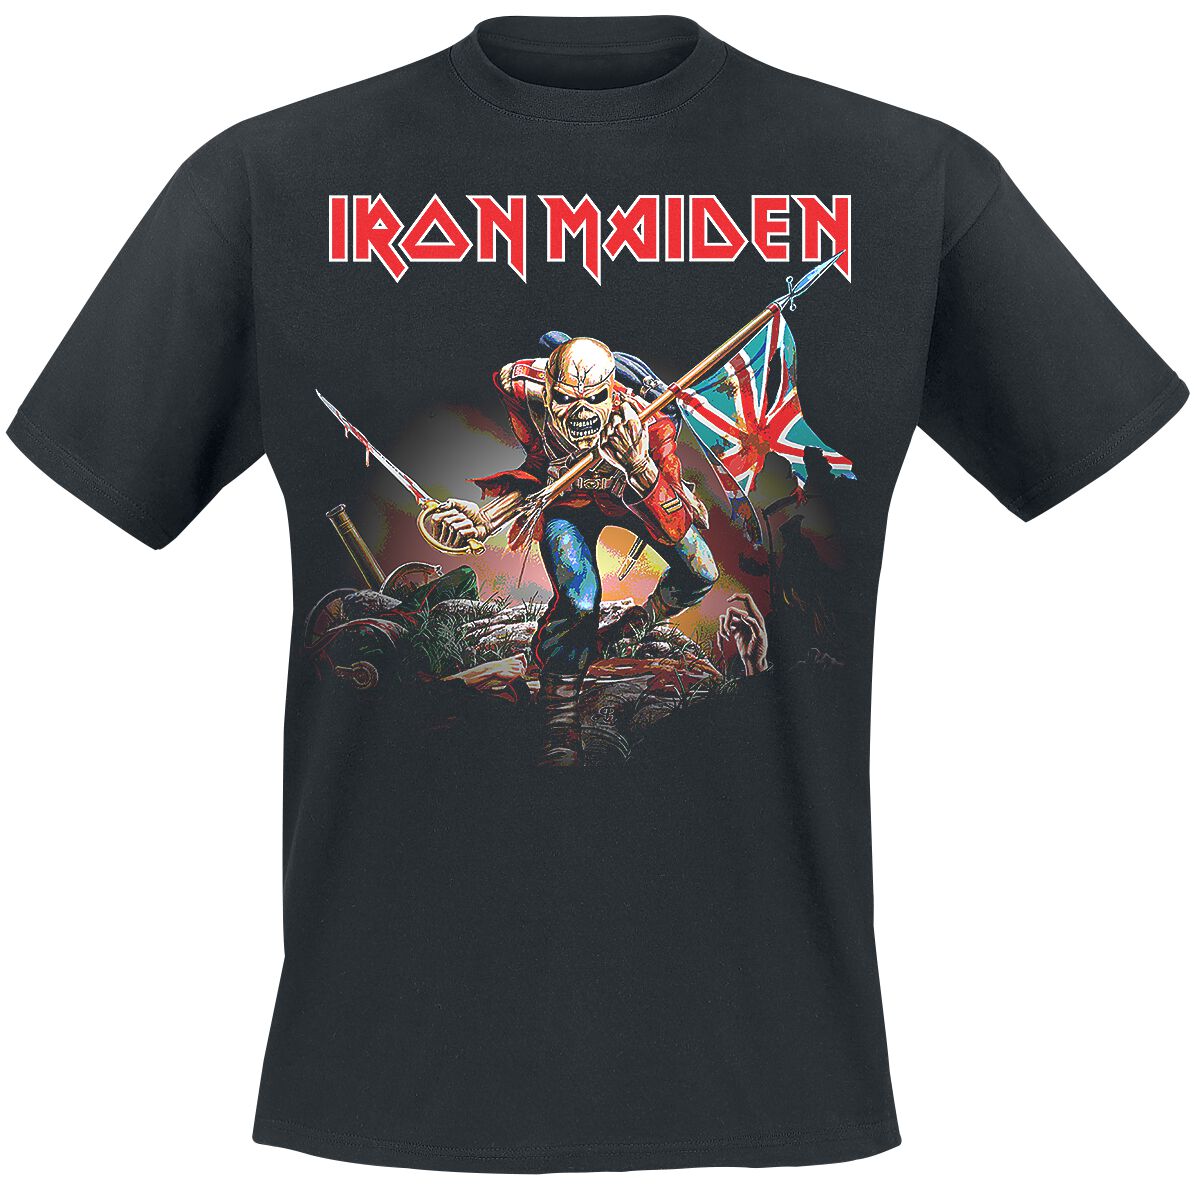 Iron Maiden T-Shirt - Trooper - S bis 4XL - für Männer - Größe 3XL - schwarz  - Lizenziertes Merchandise!